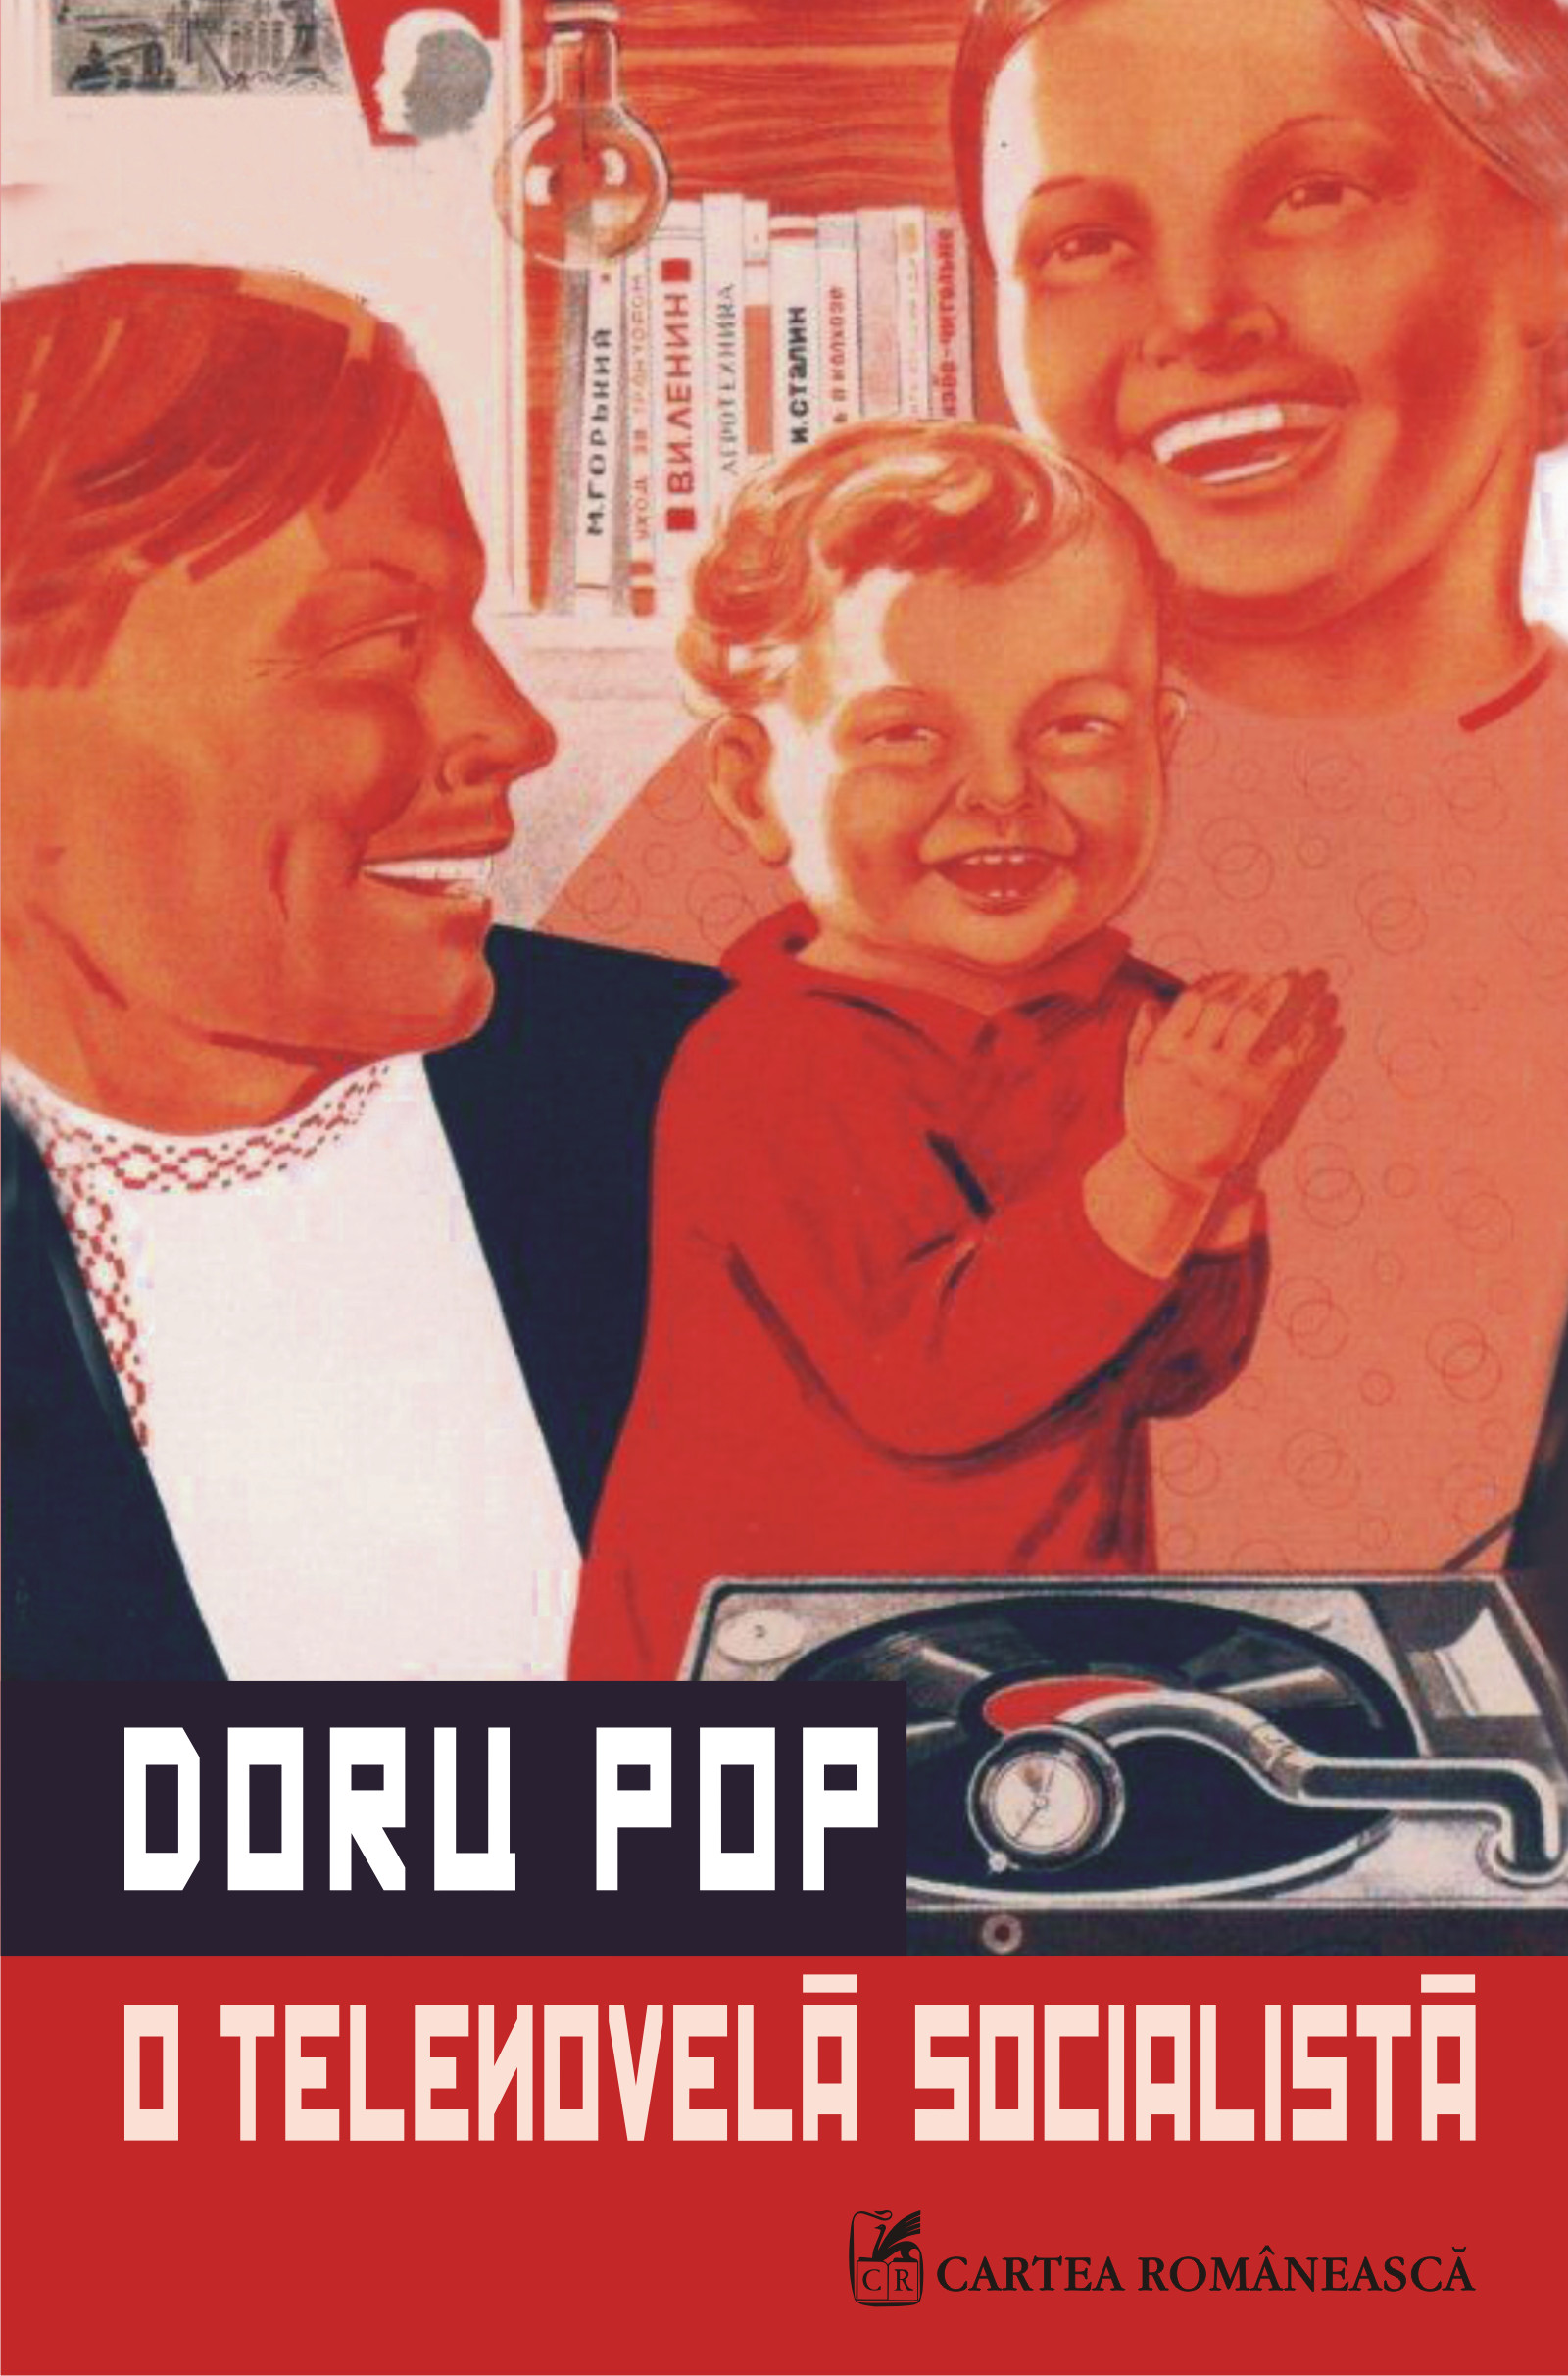 eBook O telenovela socialista - Doru Pop